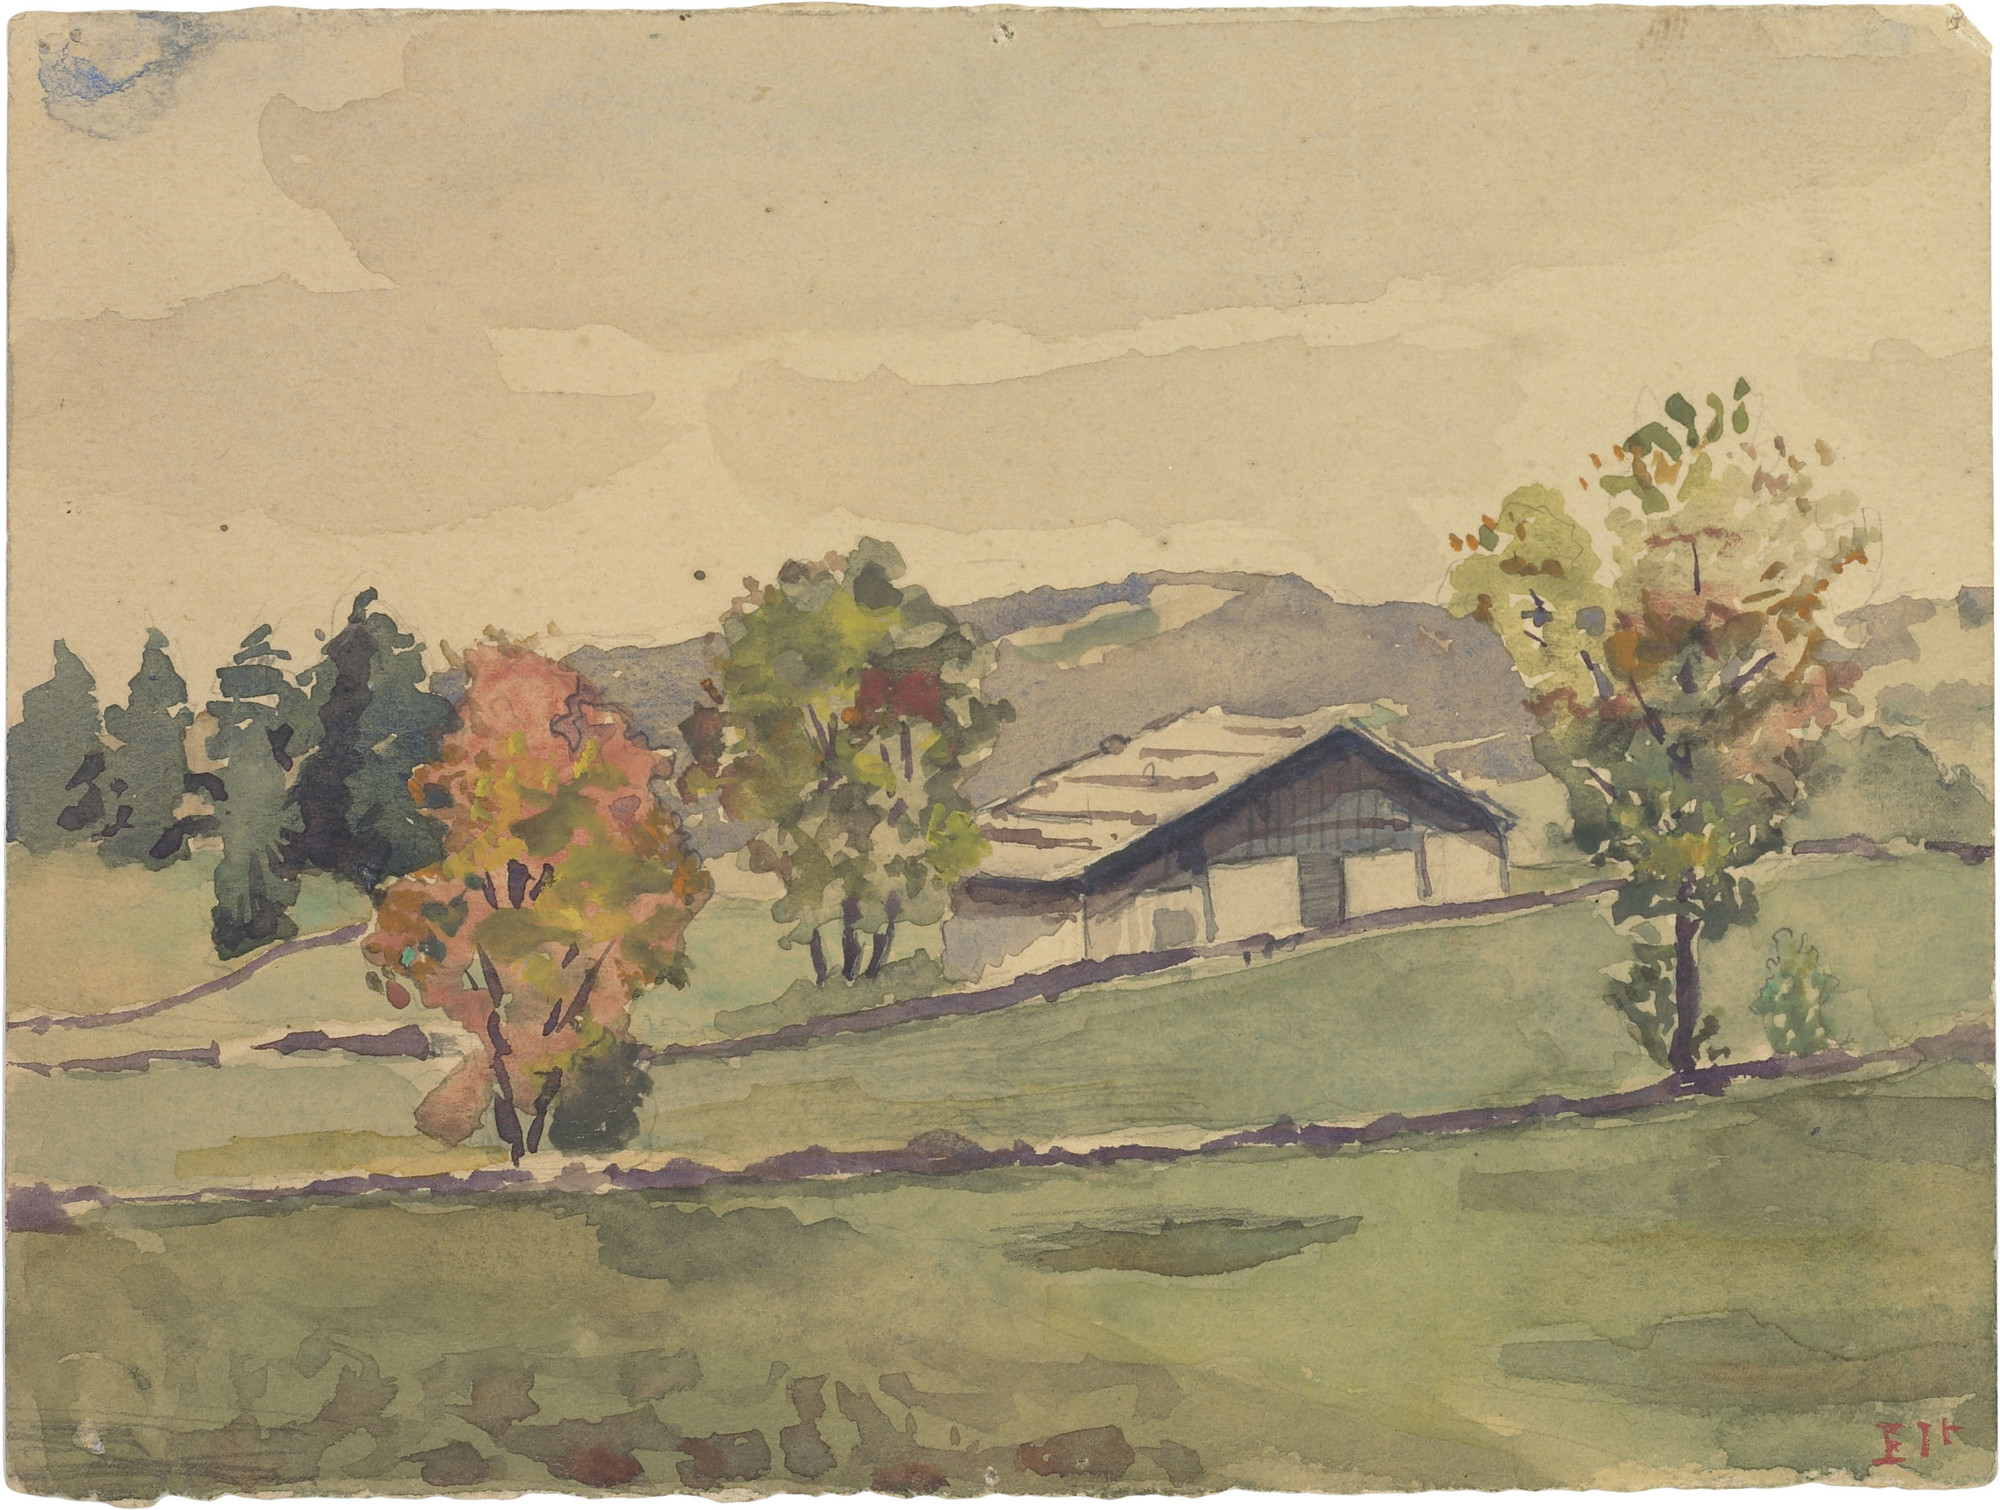 Le Corbusier (Charles-Édouard Jeanneret). Jura Landscape. 1902